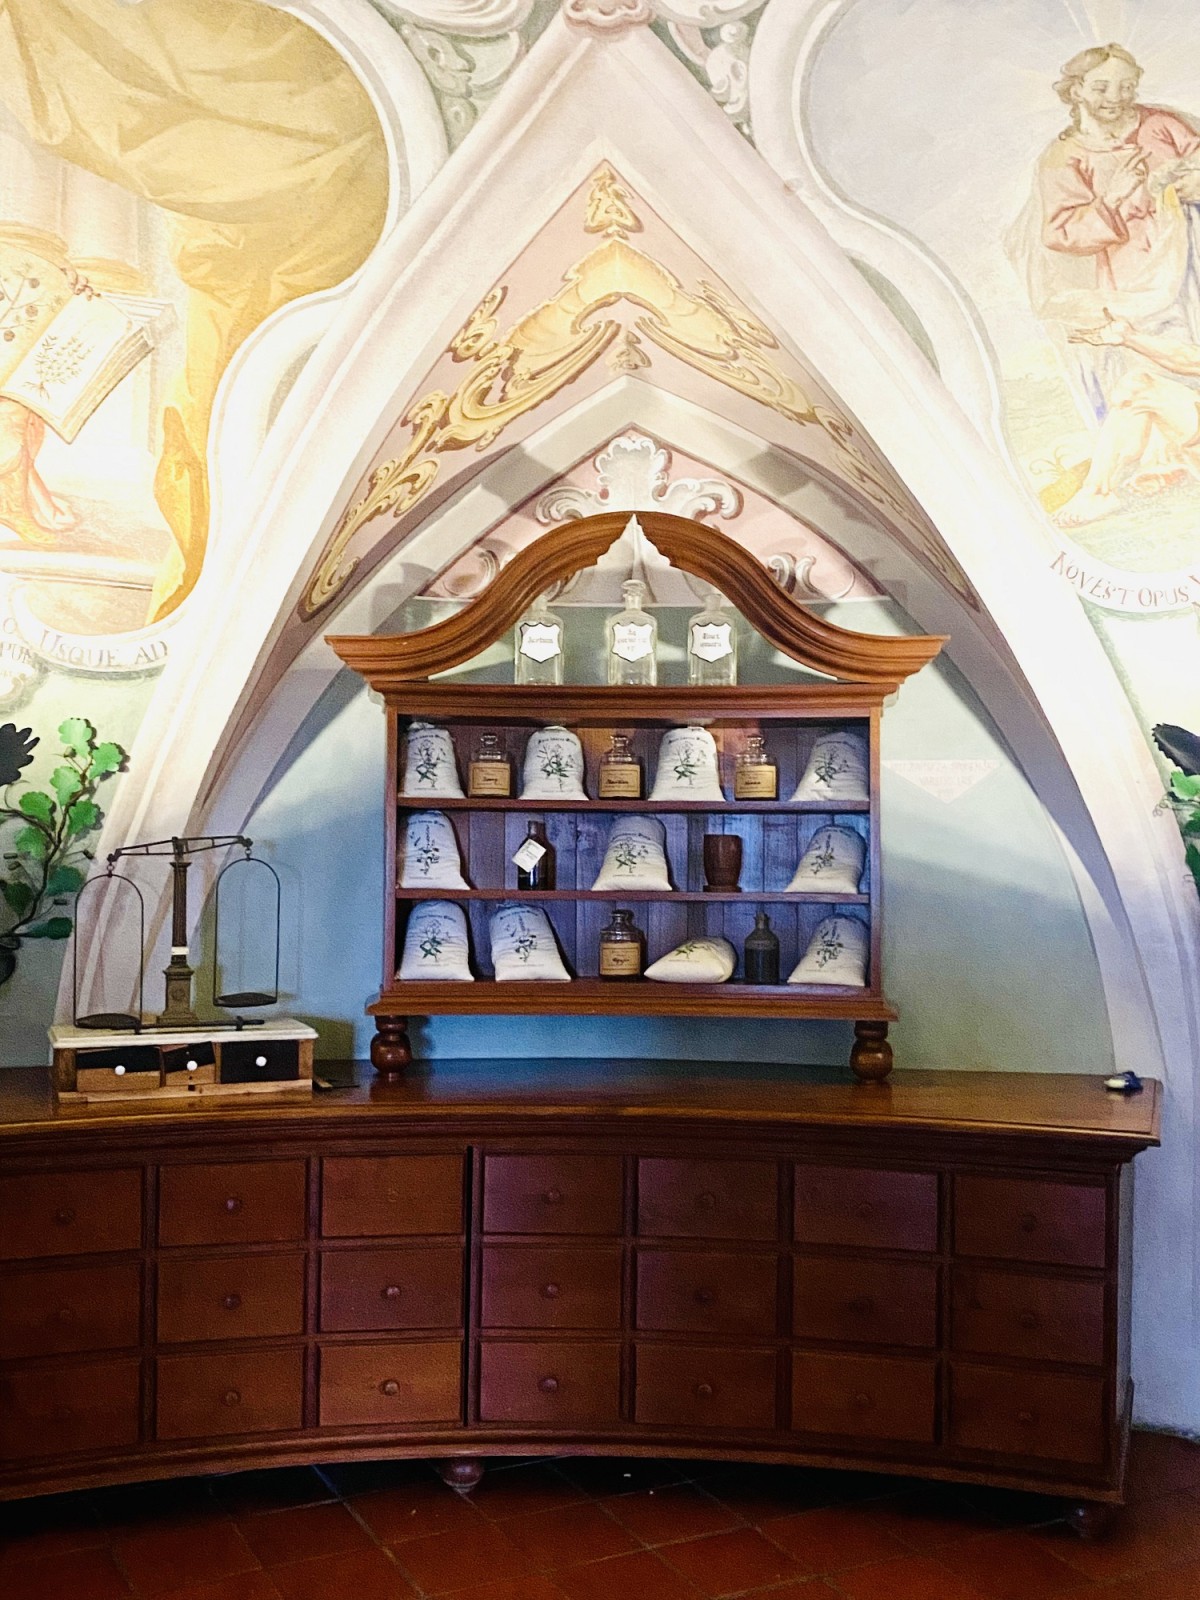 Die alte Apotheke im Kloster Olimje enthält kostbare Deckenfresken